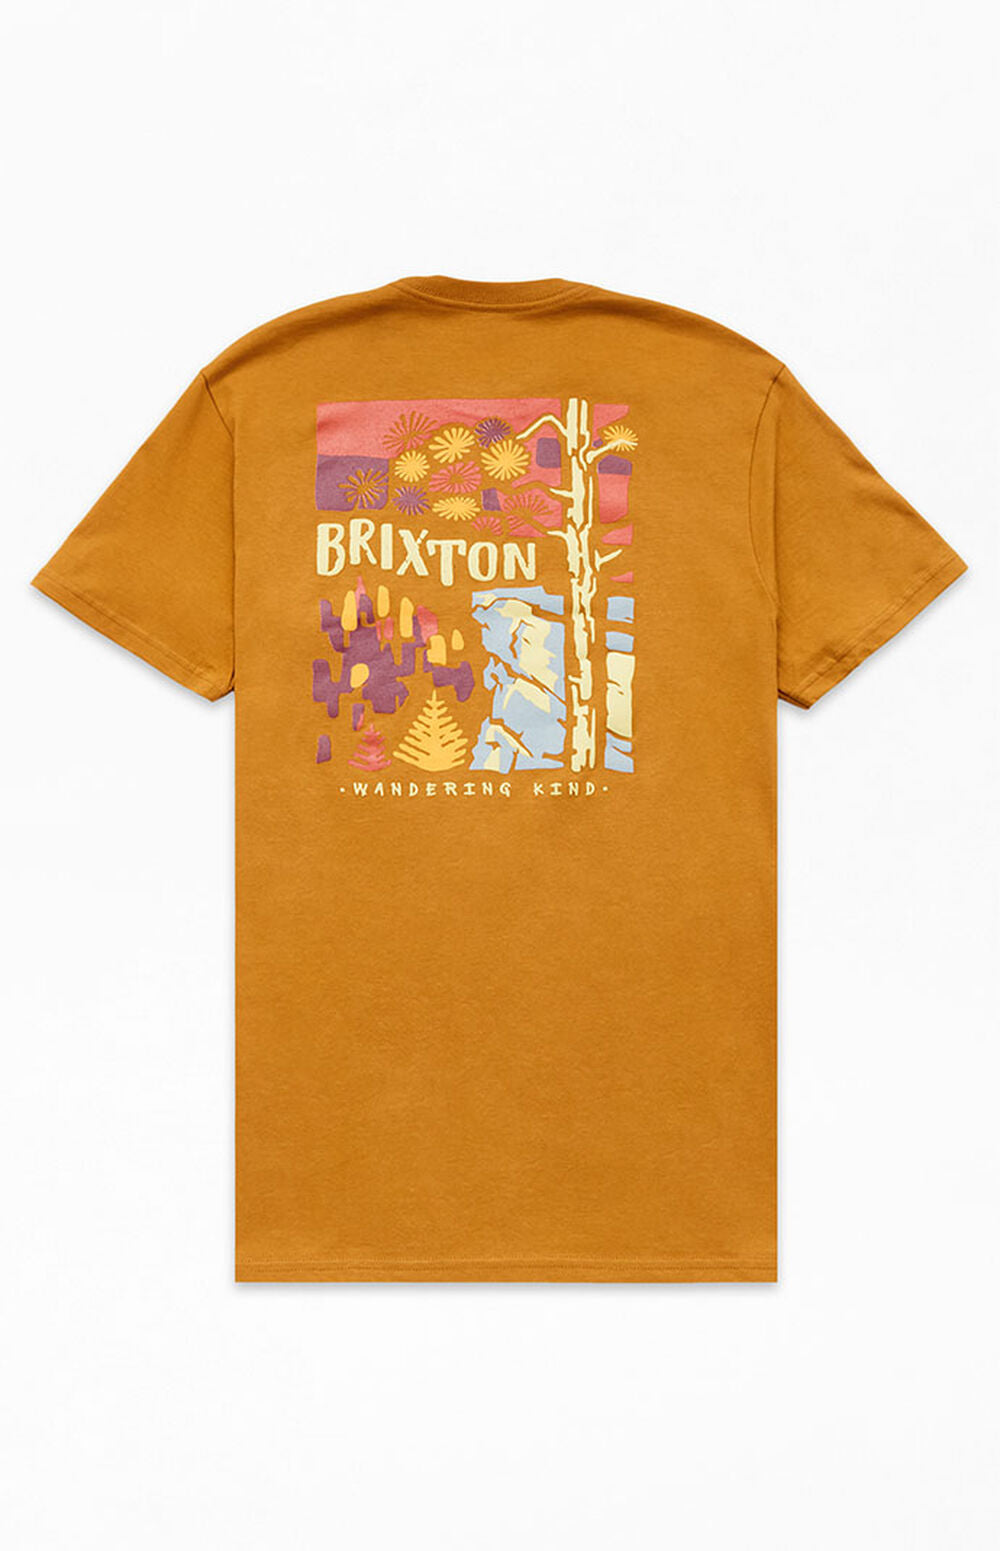 BRIXTON - HIGHVIEW S/S STT - GOLDEN BROWN